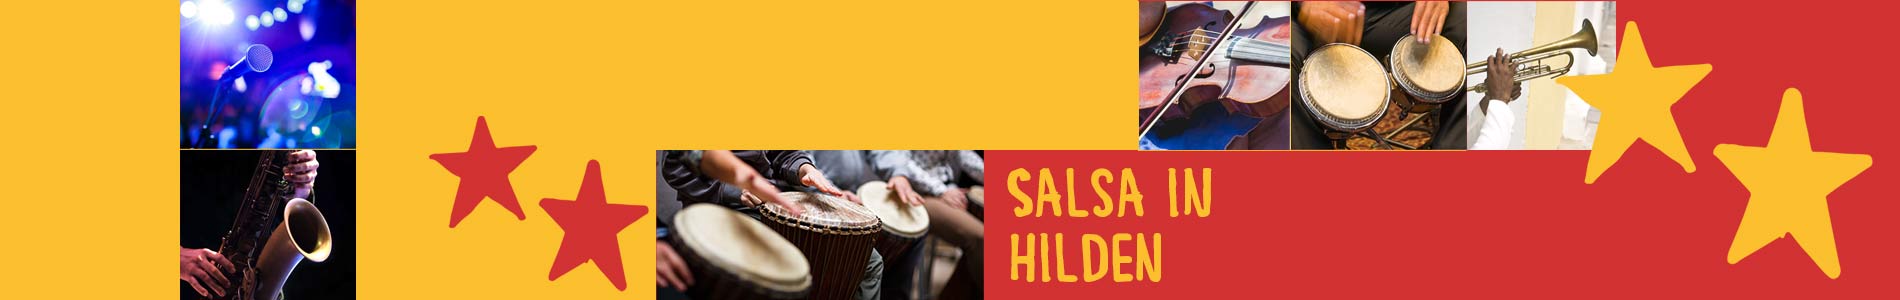 Salsa in Hilden – Salsa lernen und tanzen, Tanzkurse, Partys, Veranstaltungen